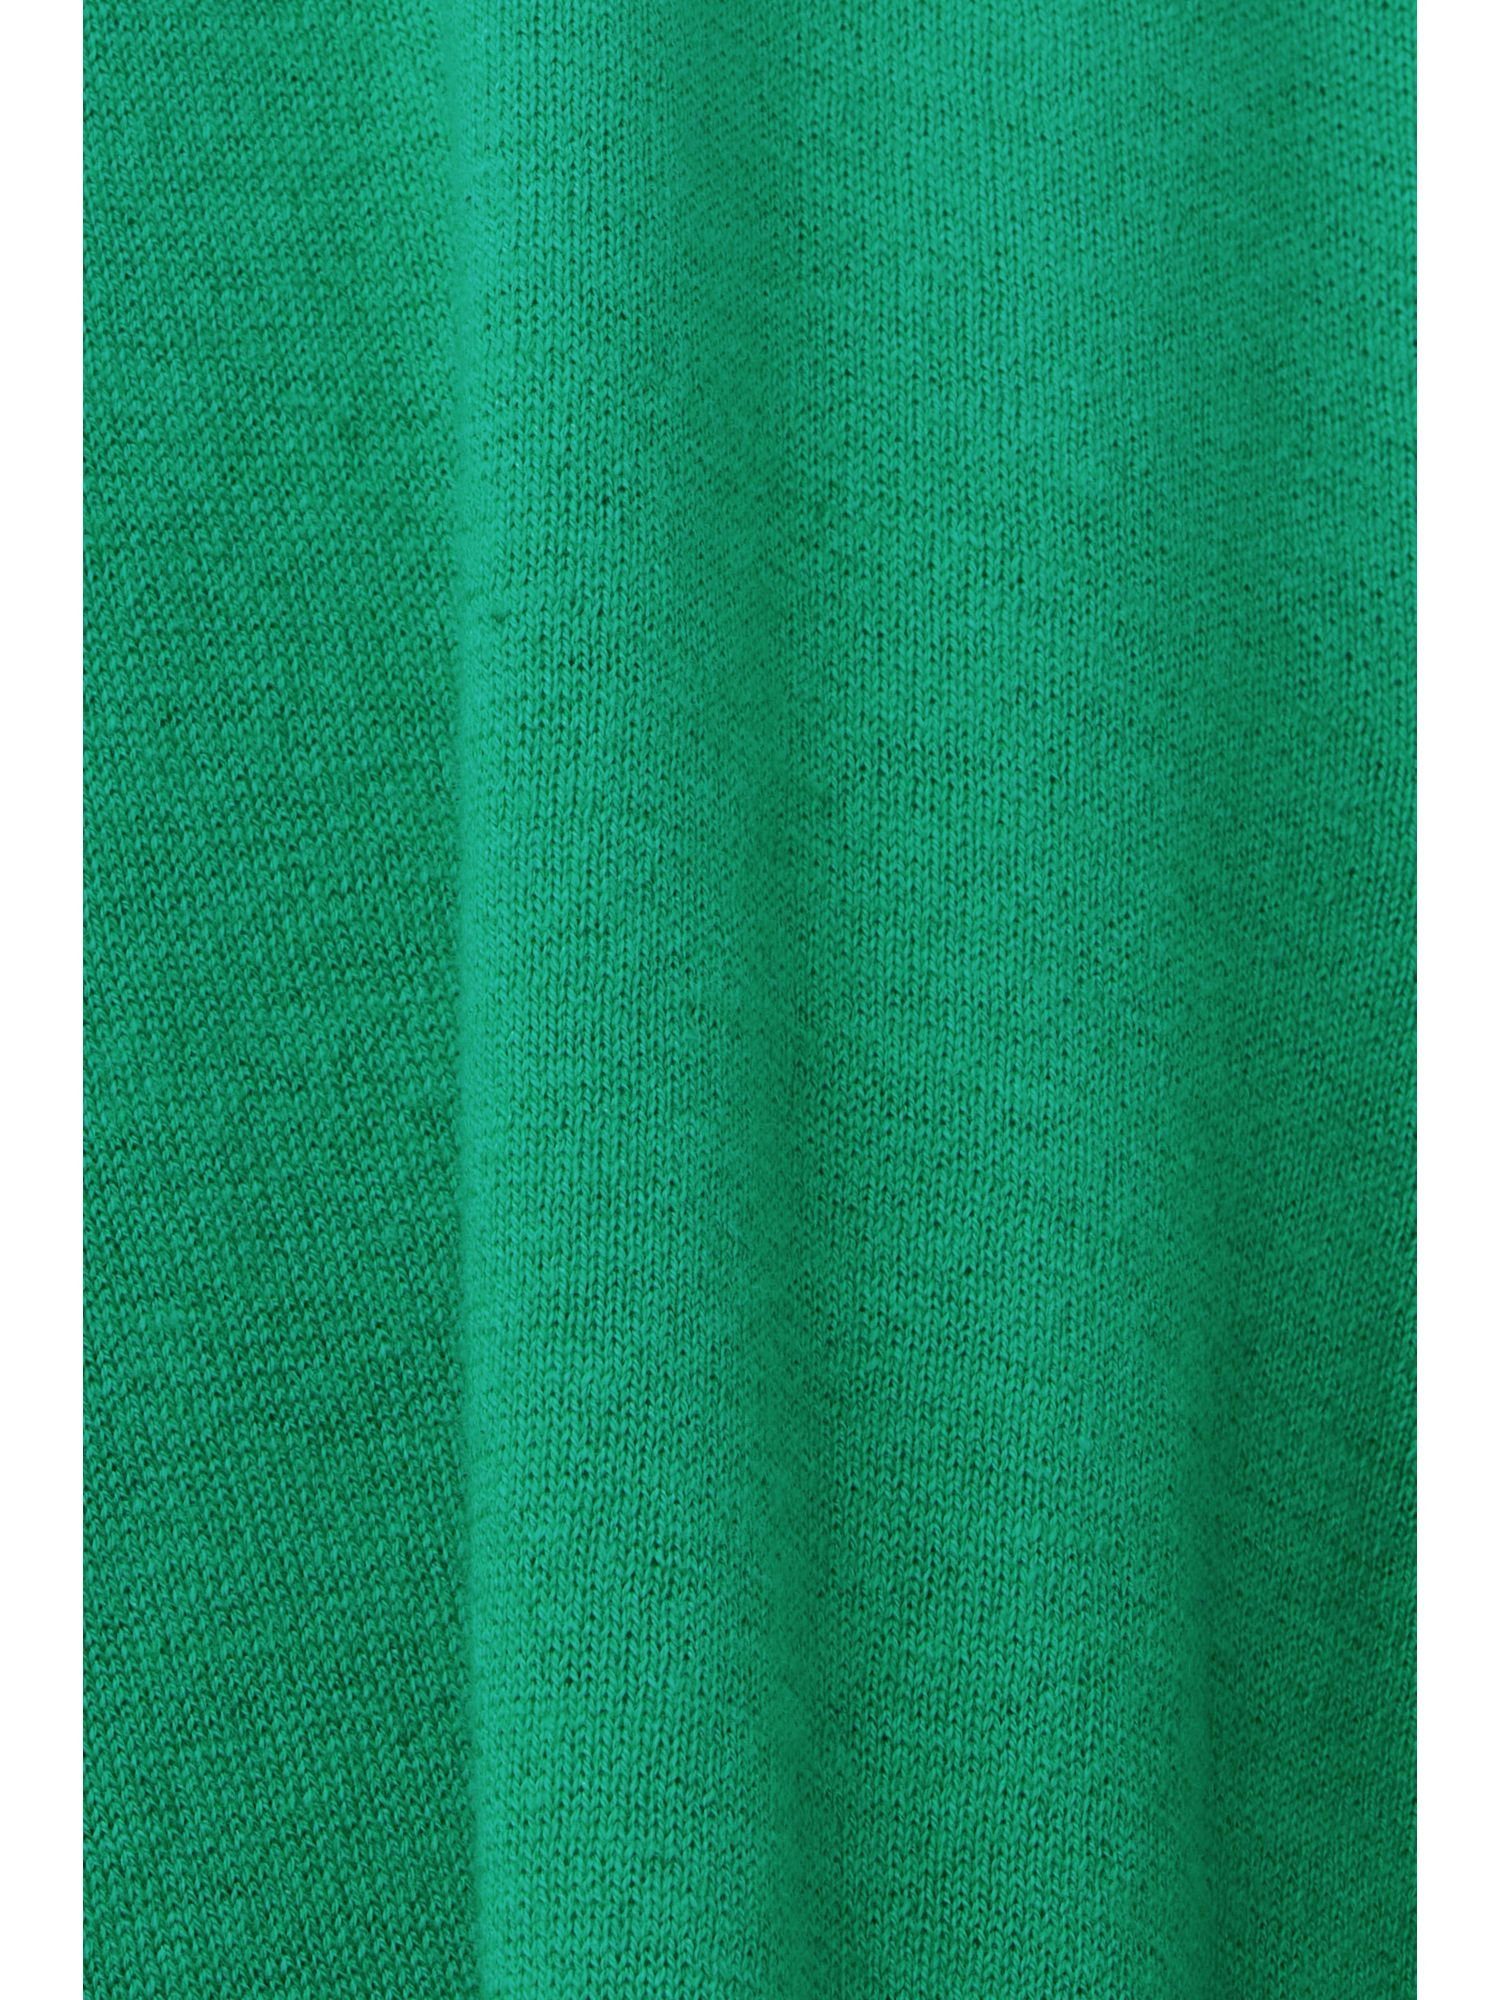 Baumwollmix aus Collection Poloshirt GREEN Mesh-Poloshirt Esprit